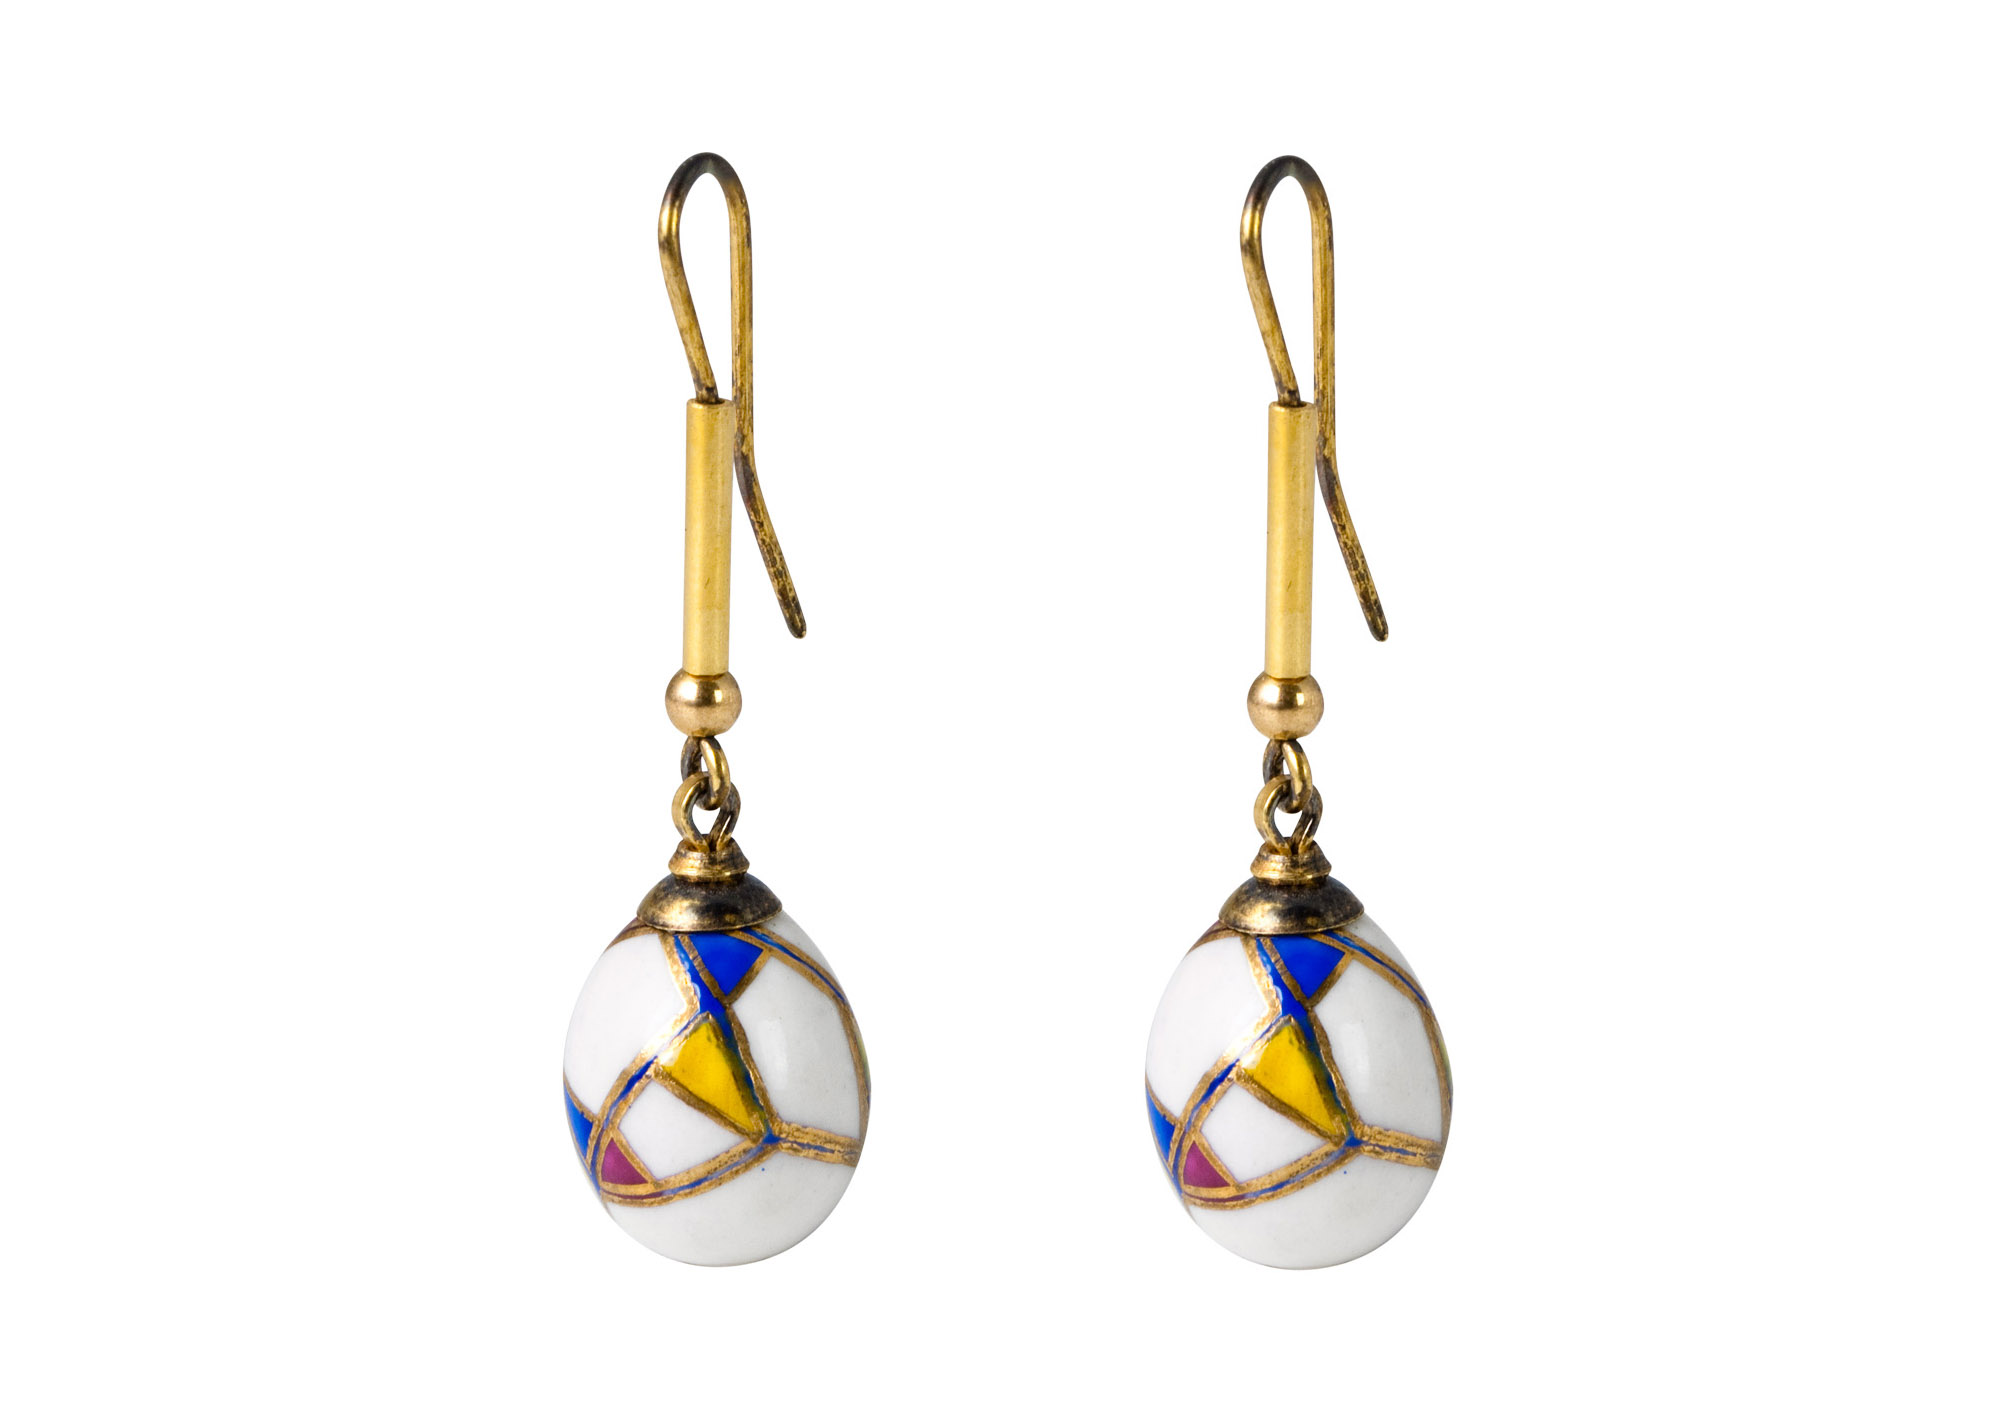 Buy Kaleidoscope Porcelain Earrings at GoldenCockerel.com